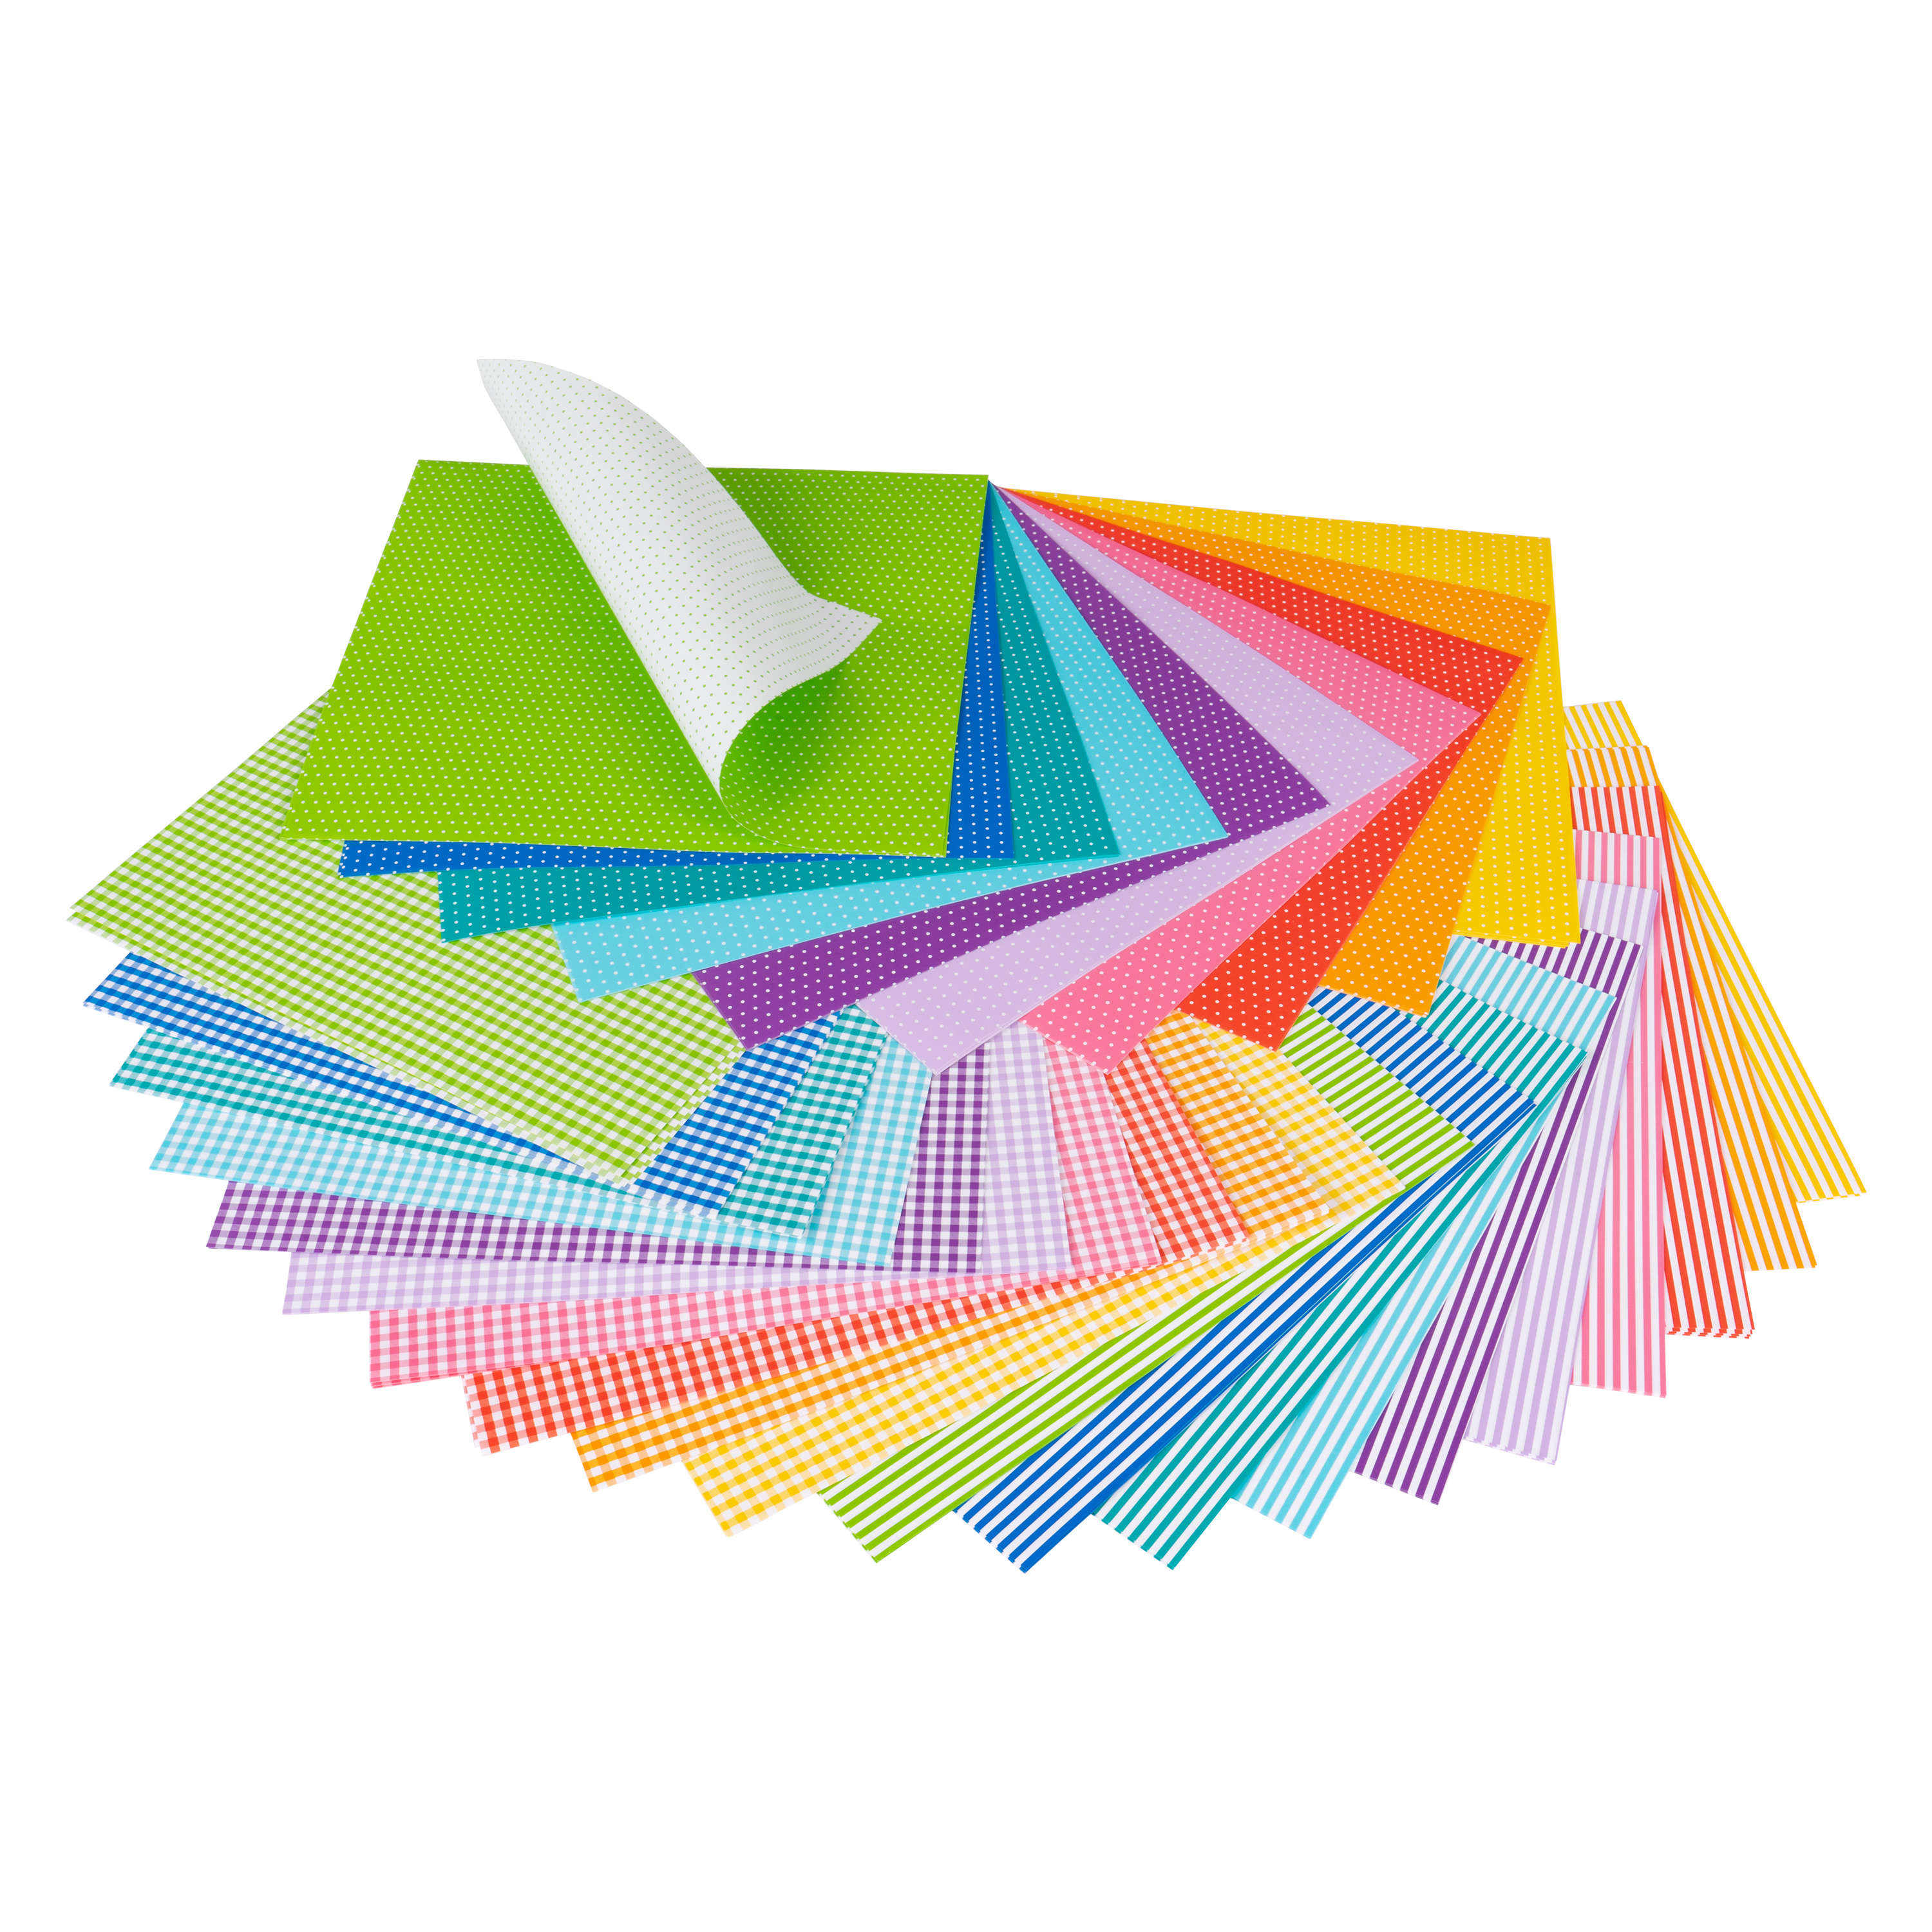 Origami Faltblätter 'Mini Designs', 15 x 15 cm